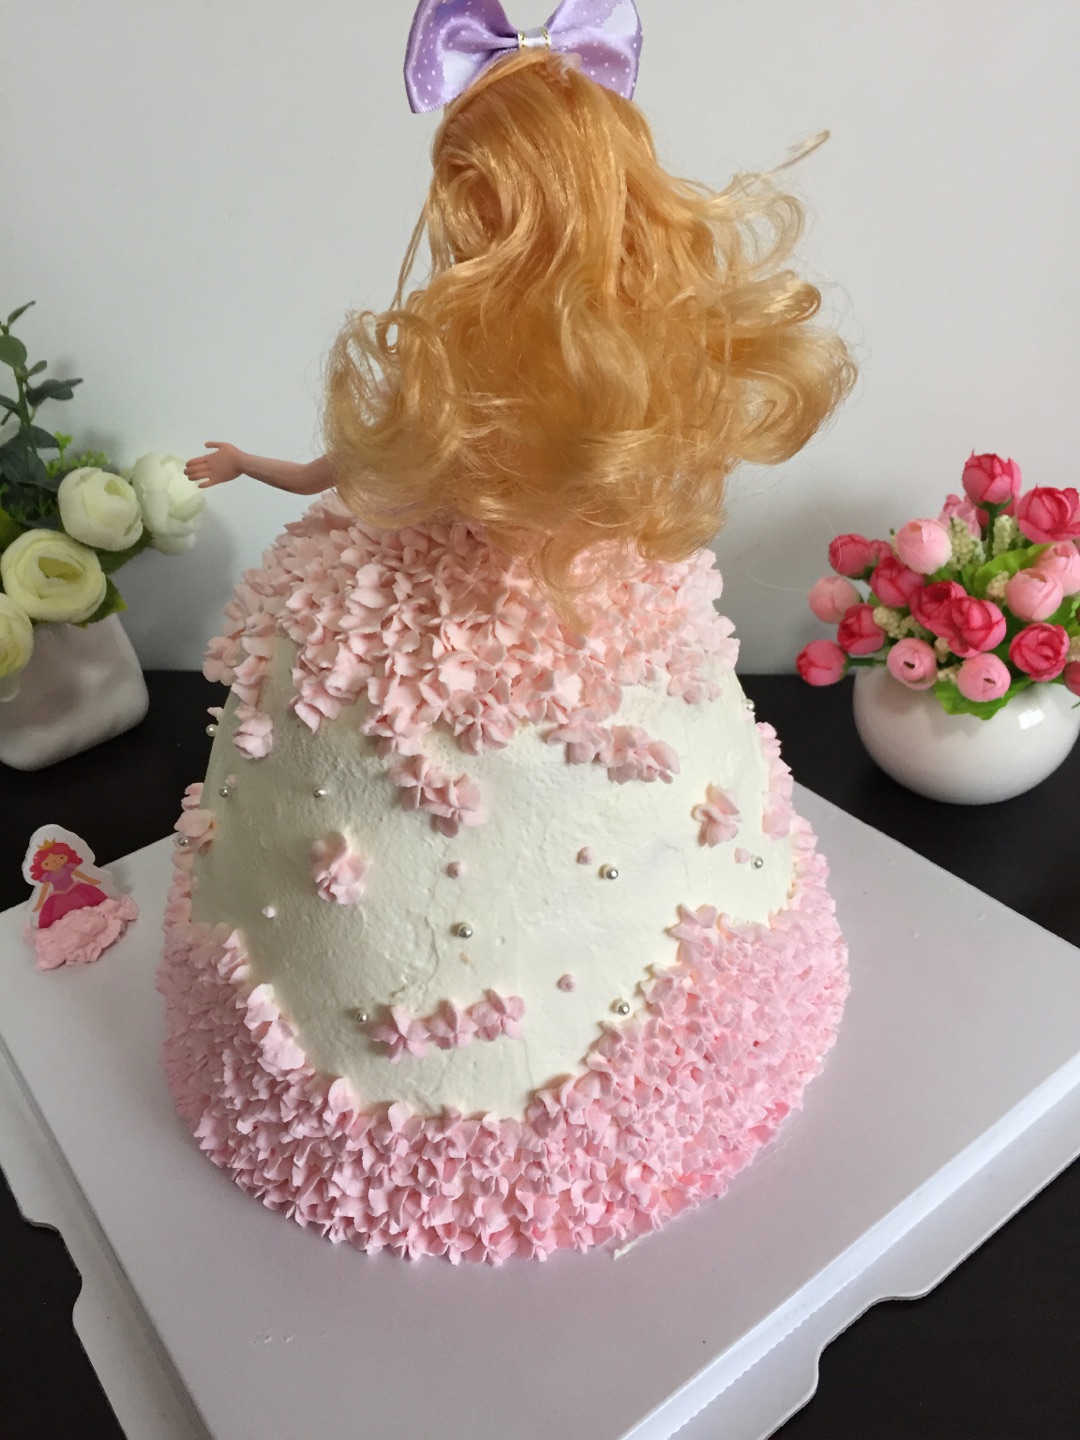 微笑的彩虹: 小公主的生日蛋糕～芭比娃娃蛋糕